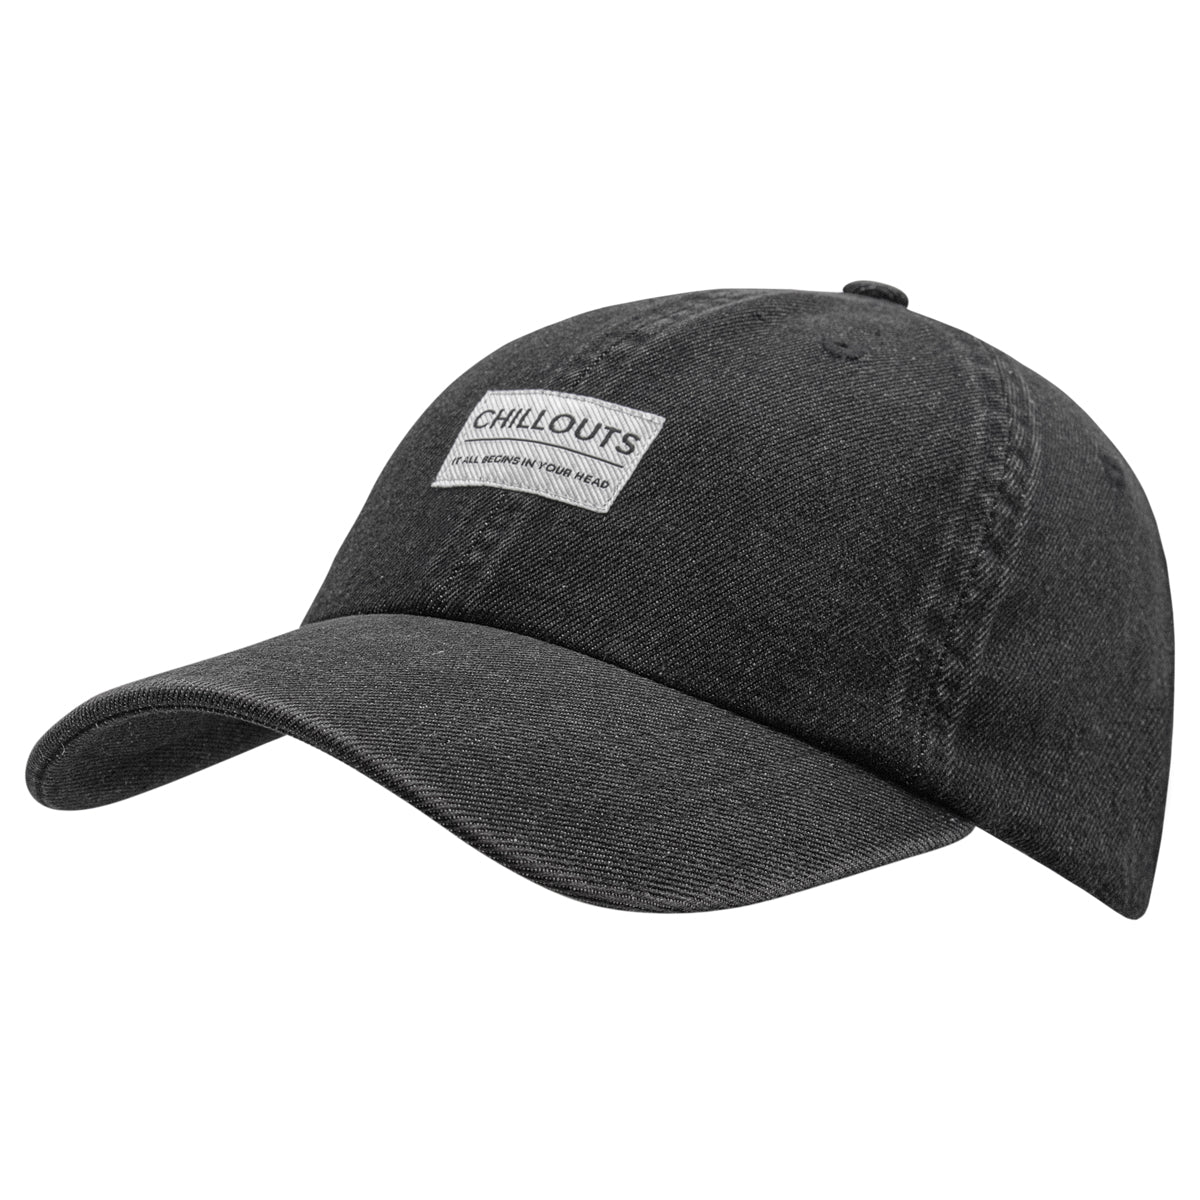 Cap aus Baseball – Headwear (Unisex) Baumwolle Look Chillouts Denim kaufen! hier - im